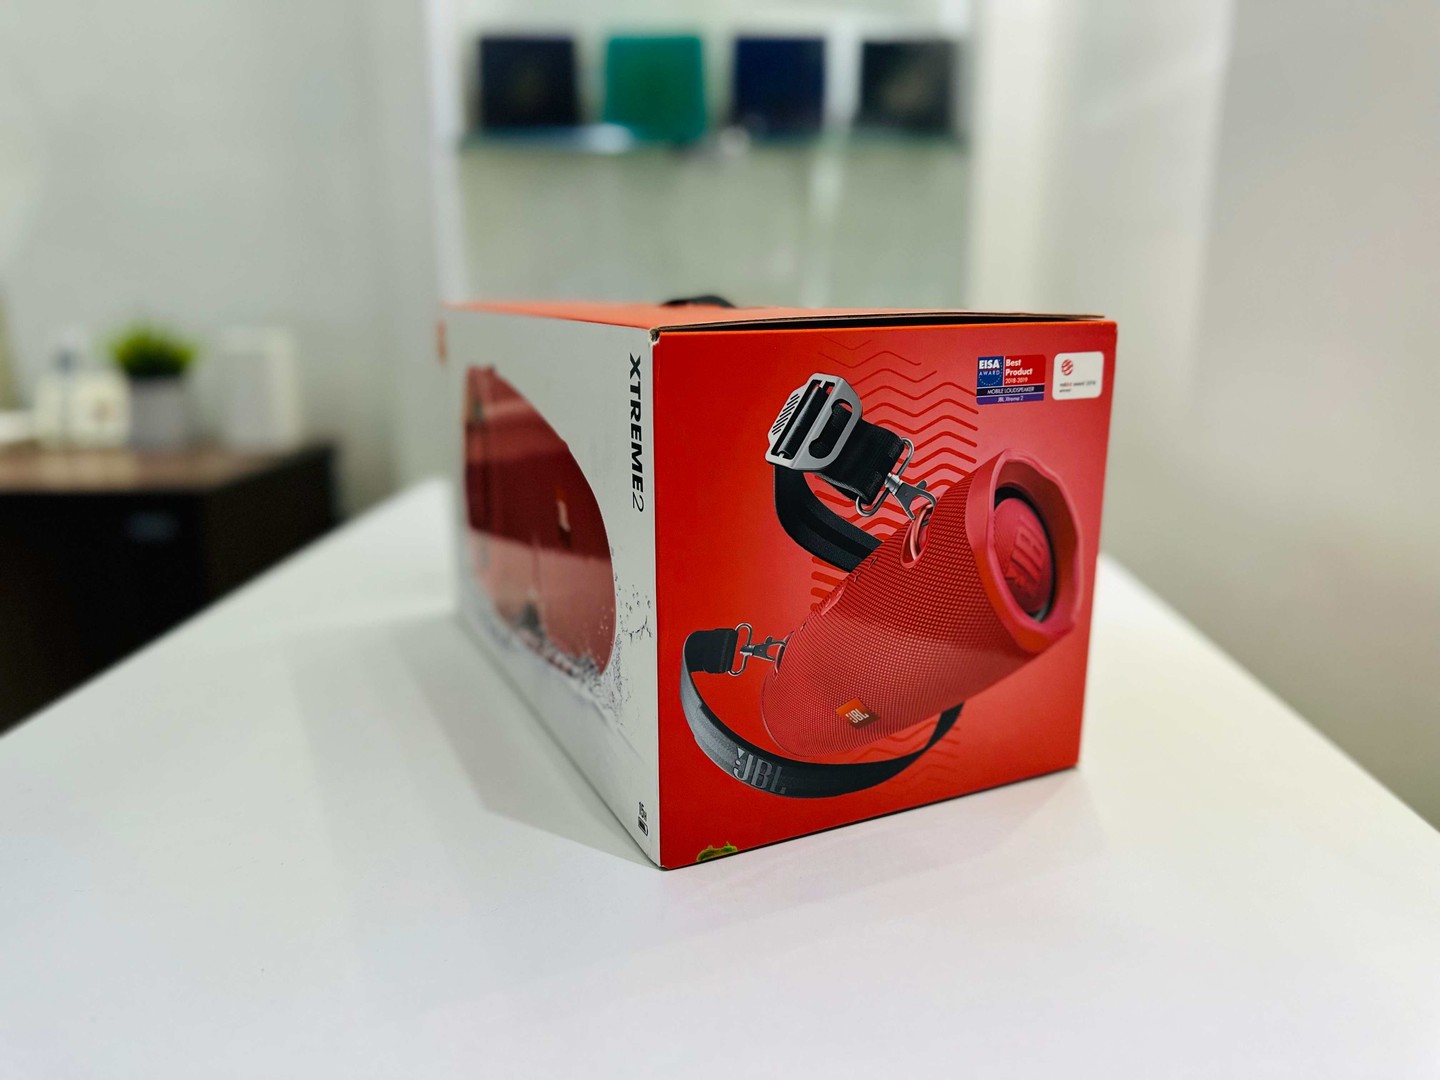 accesorios para electronica - Vendo Bocinas JBL Xtreme 2 Rojo Nuevas Selladas, Originales RD$ 12,500 NEG 2